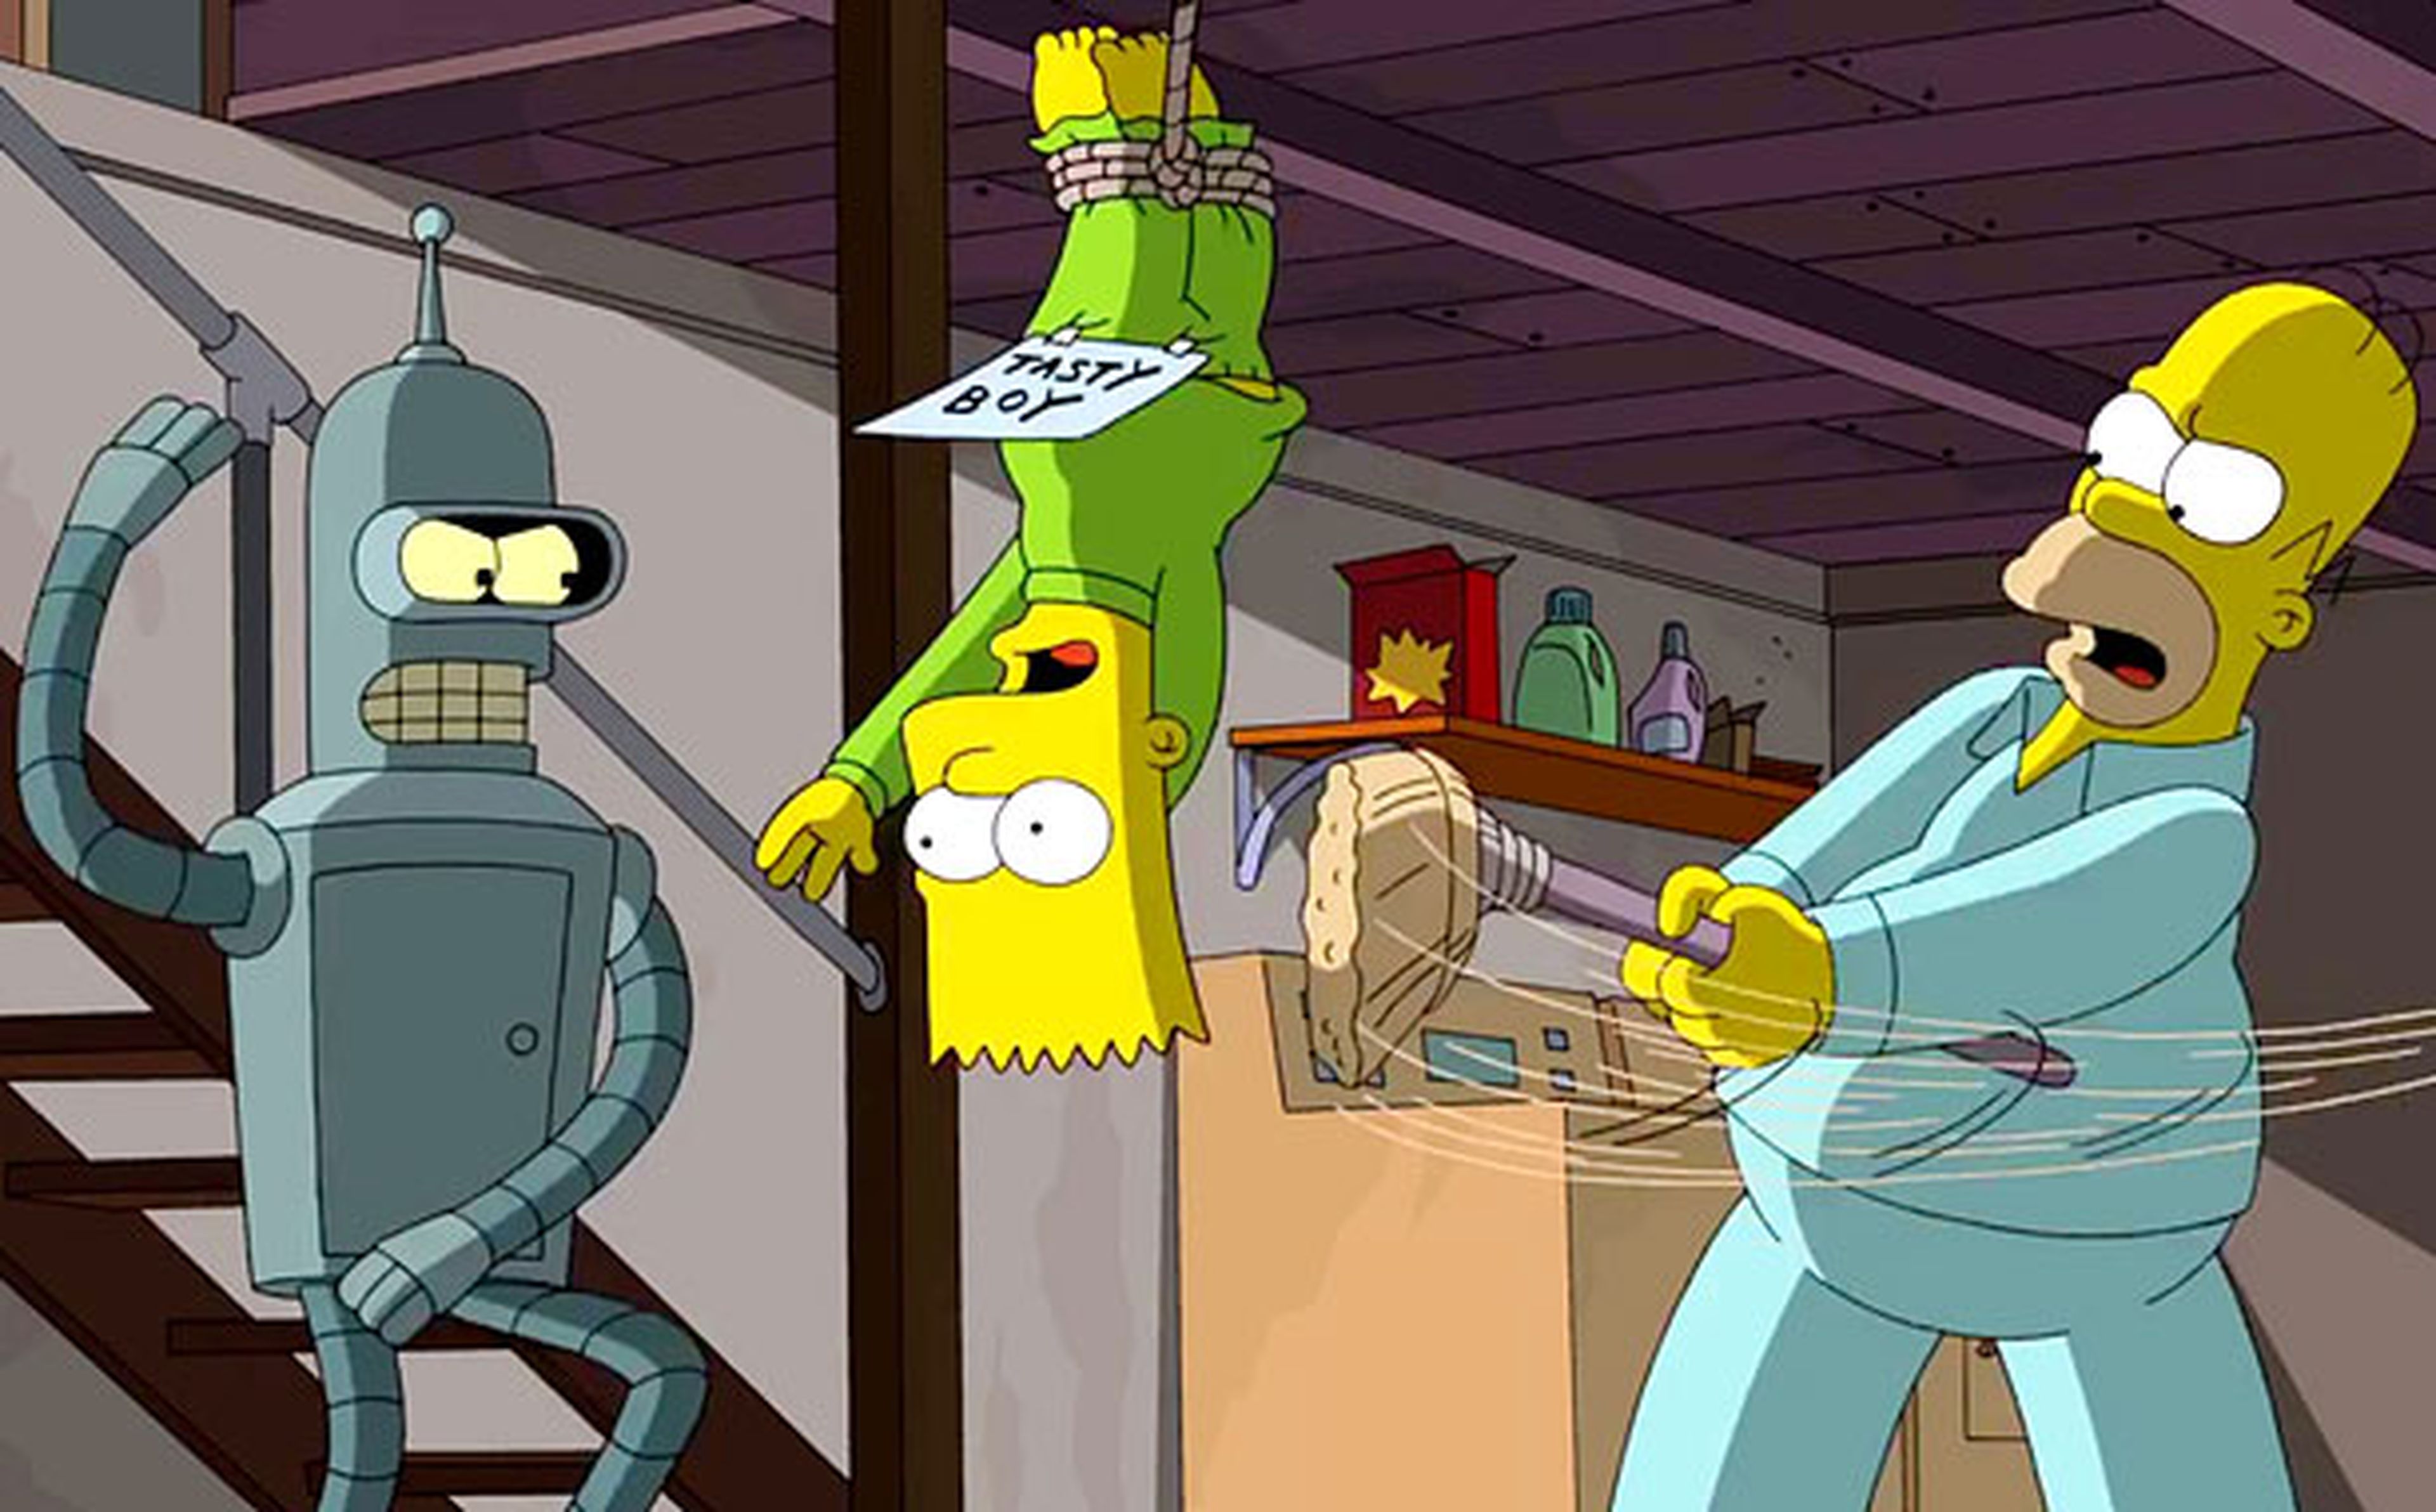 Nueva imagen del crossover de Los Simpsons y Futurama